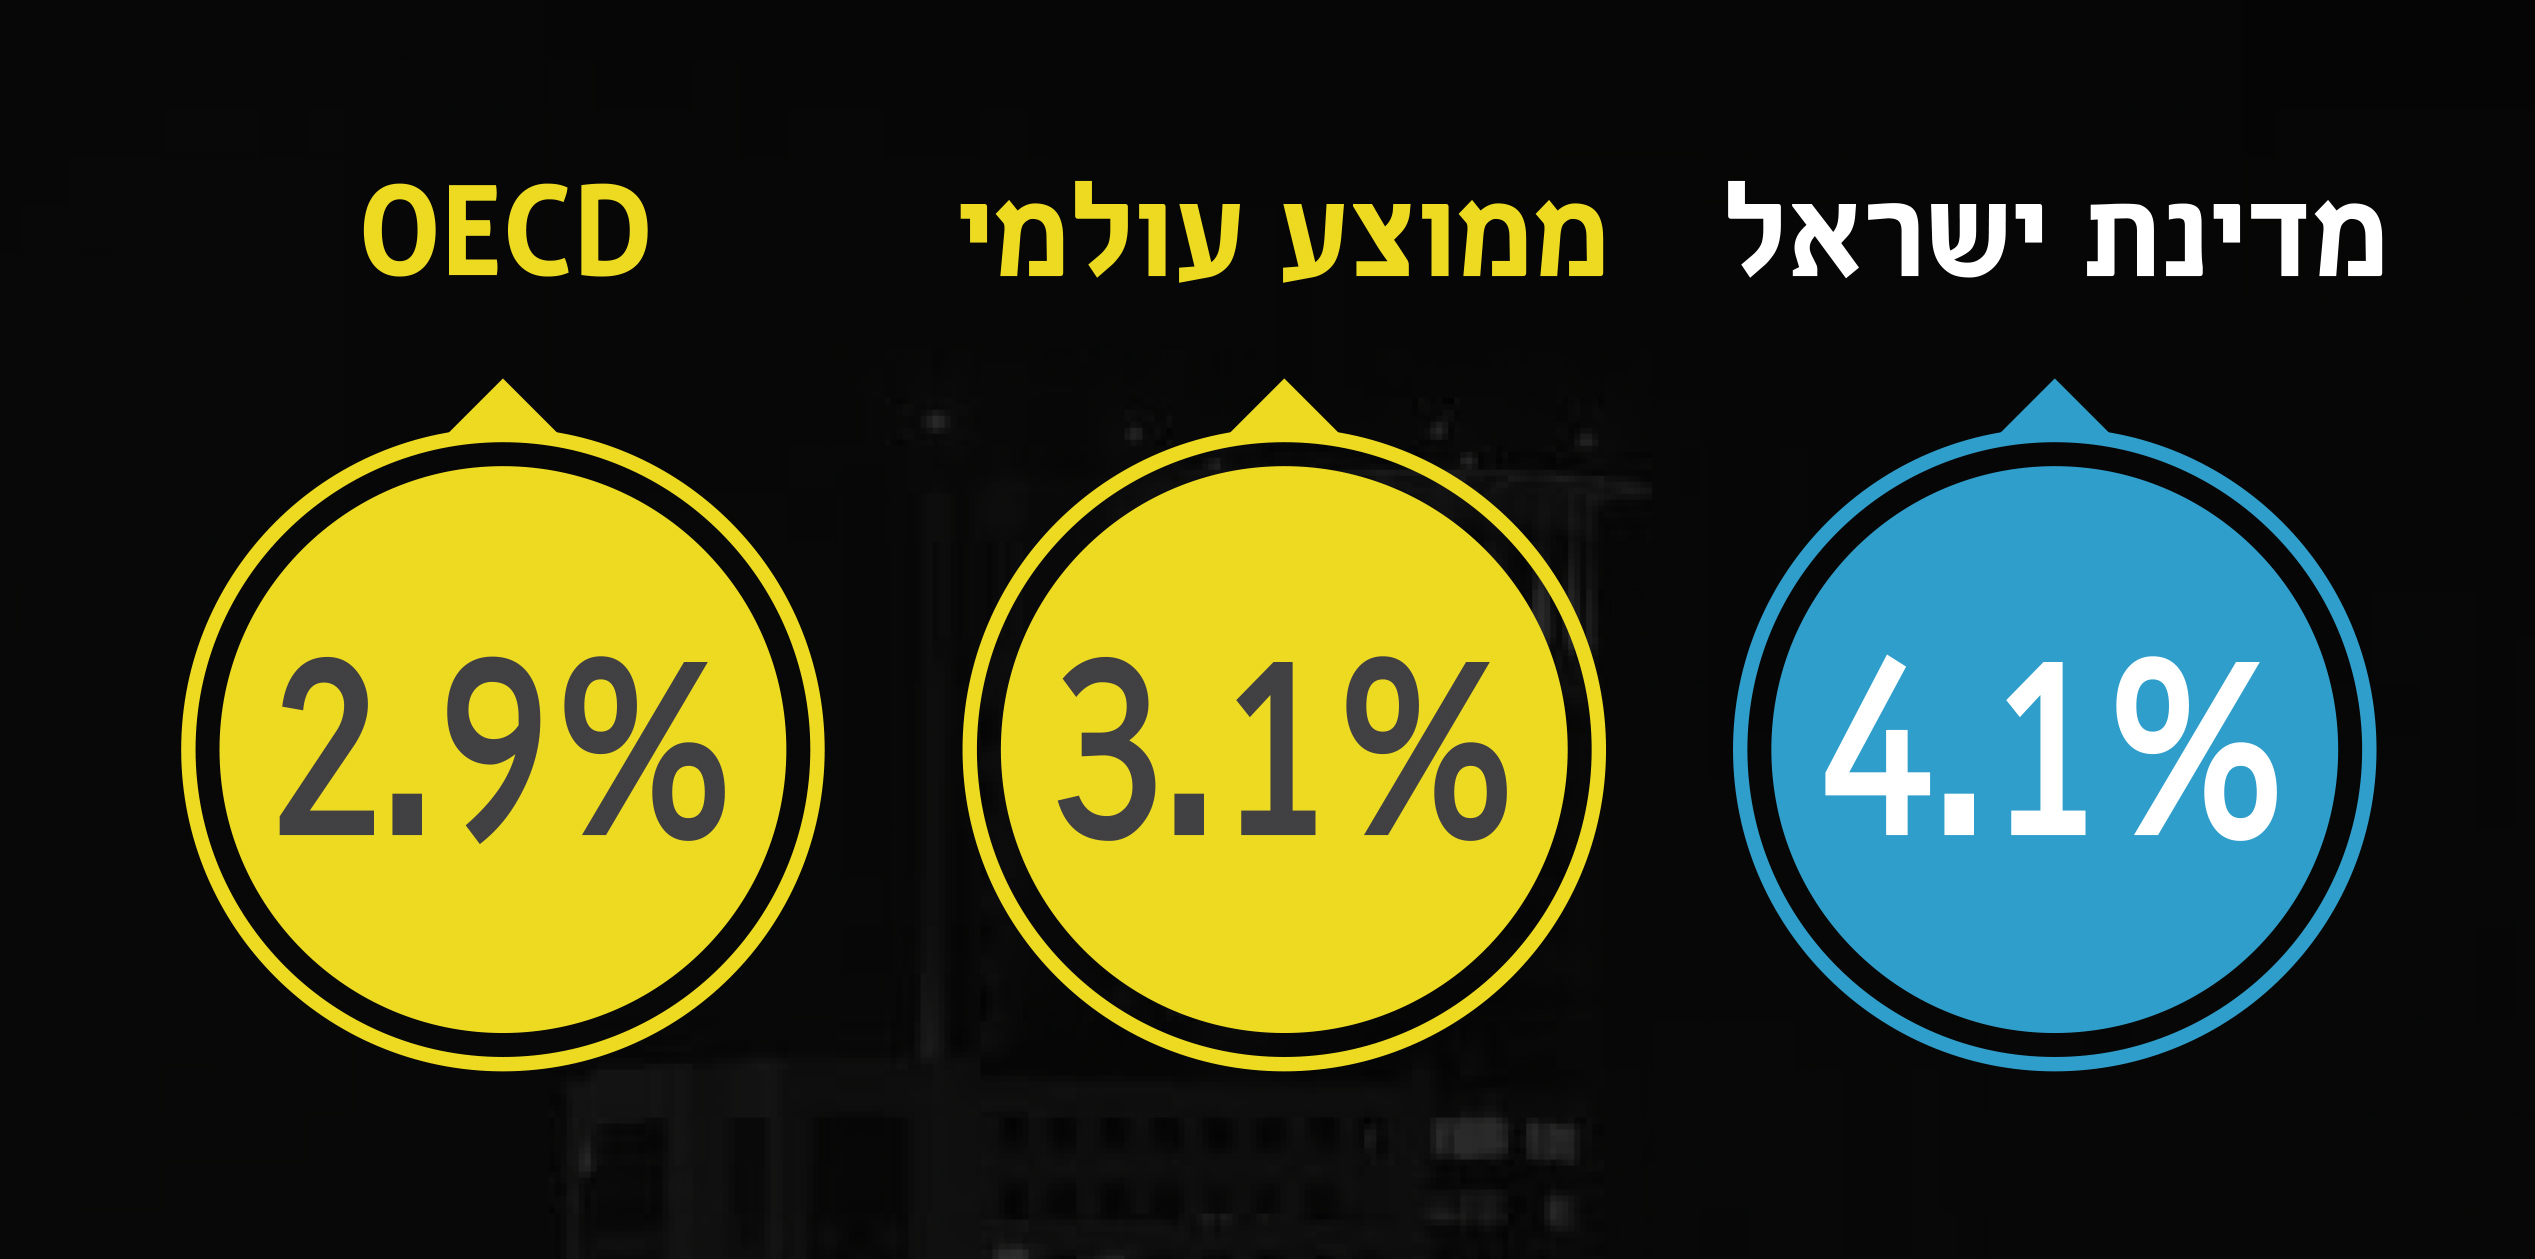 אינפוגרפיקה: מדינת ישראל - 4.1%, ממוצע עולמי - 3.1%, oecd - 2.9%